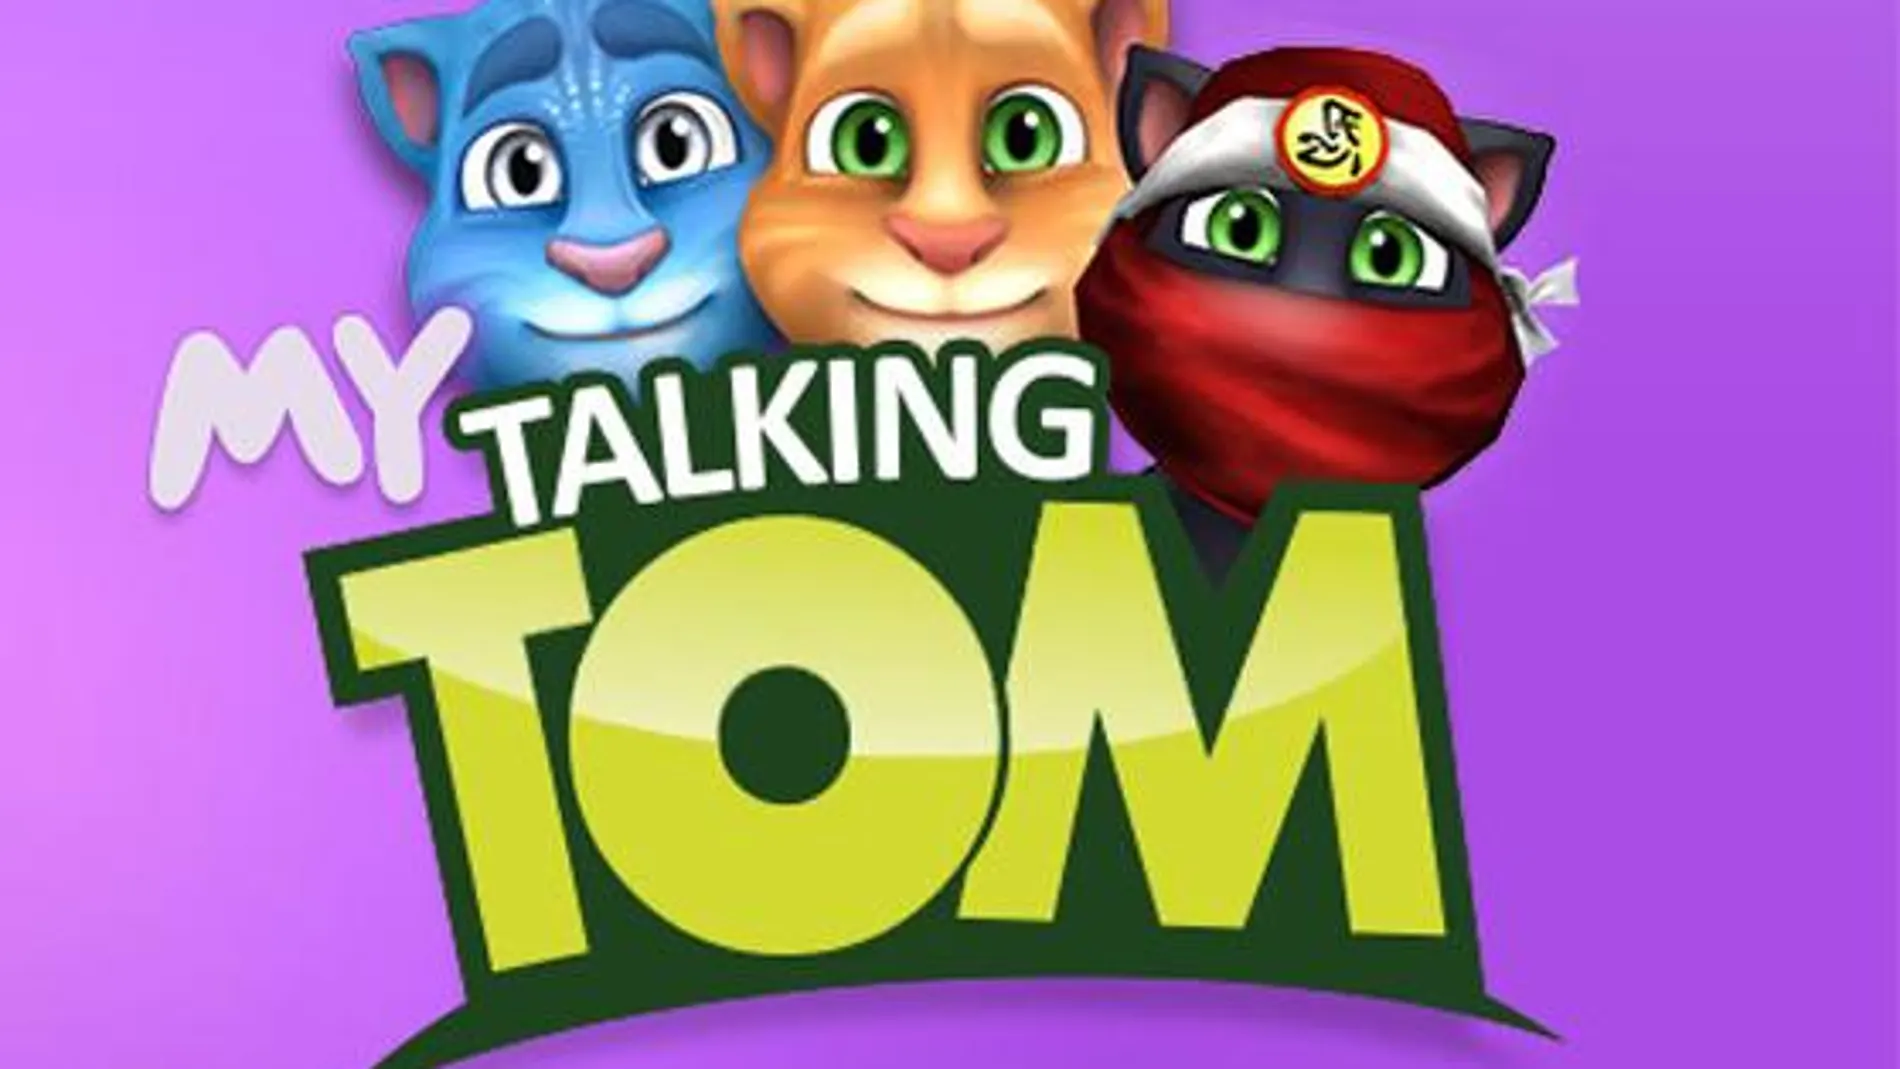 Talking Tom y sus amigos parlanchines han sobrepasado los 1500 millones de descargas